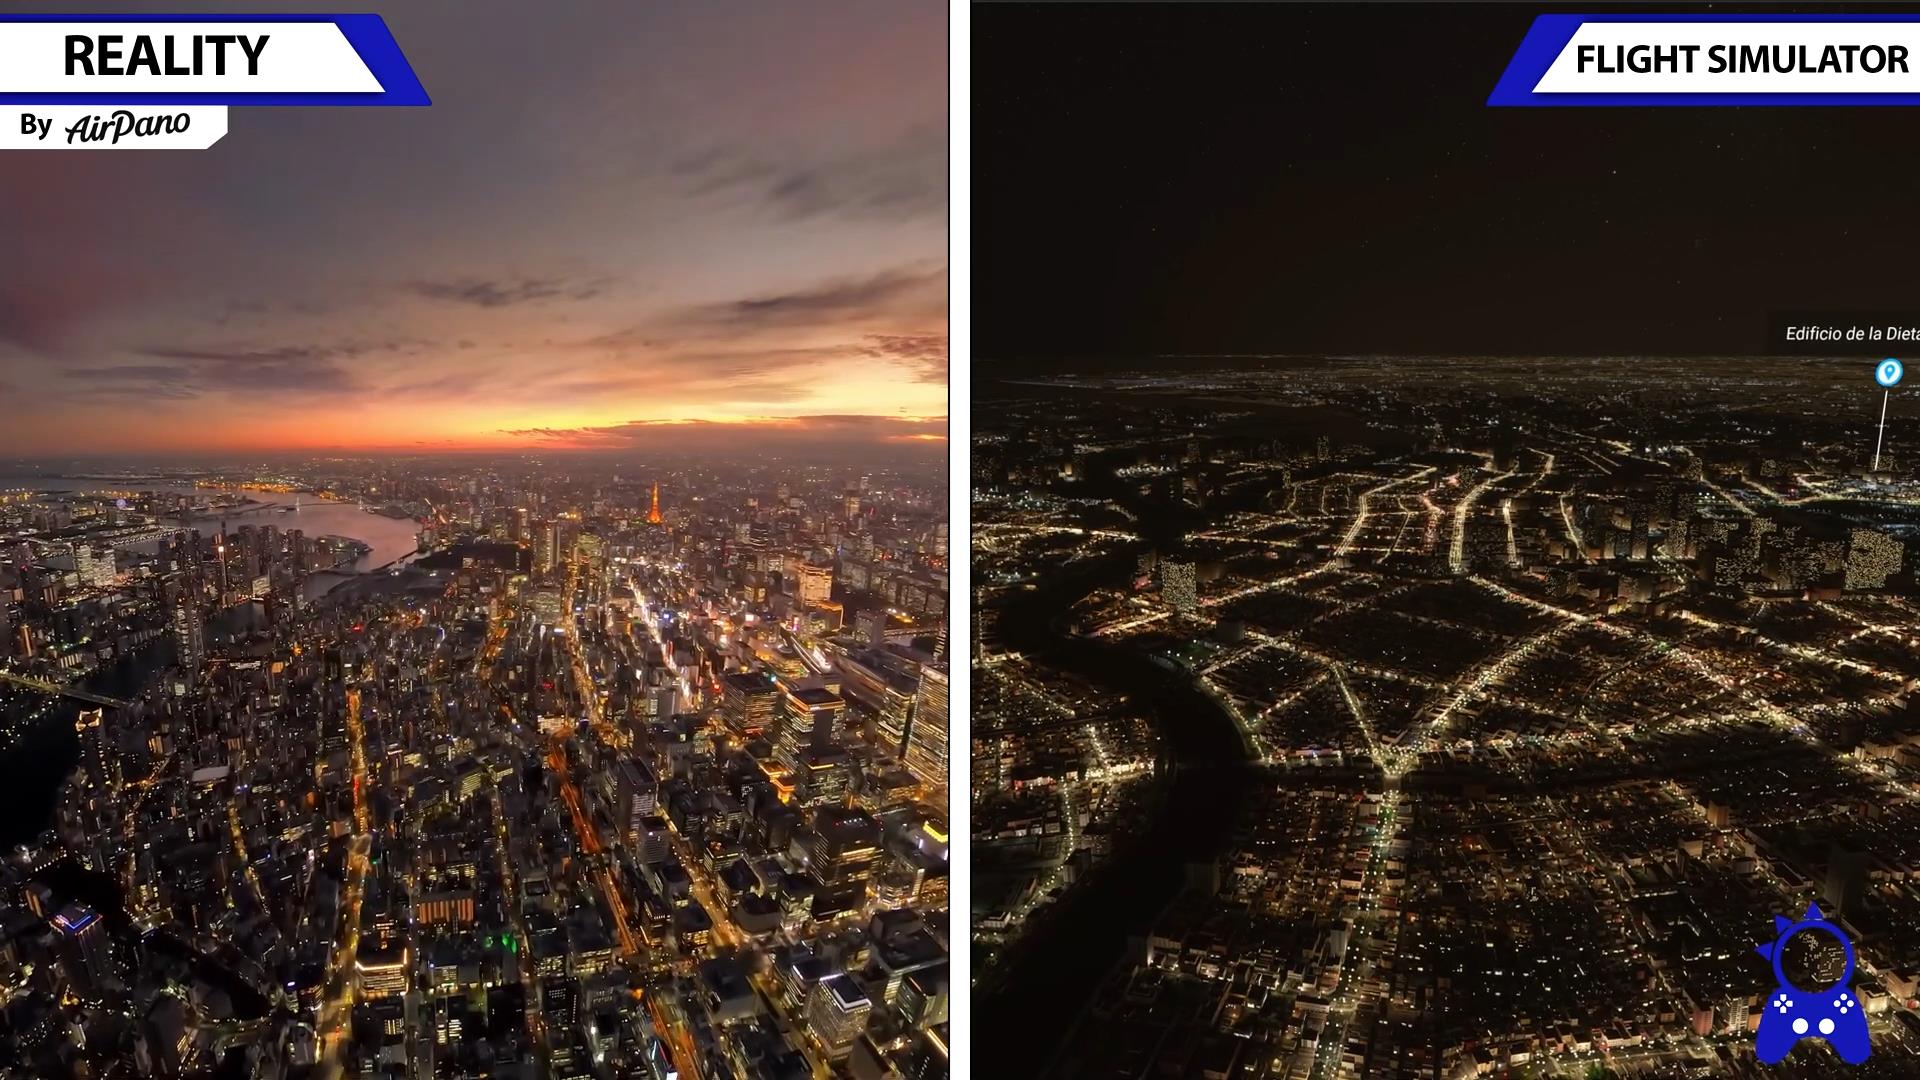 《微软飞行模拟》游戏画面与现实场景对比视频-6428 